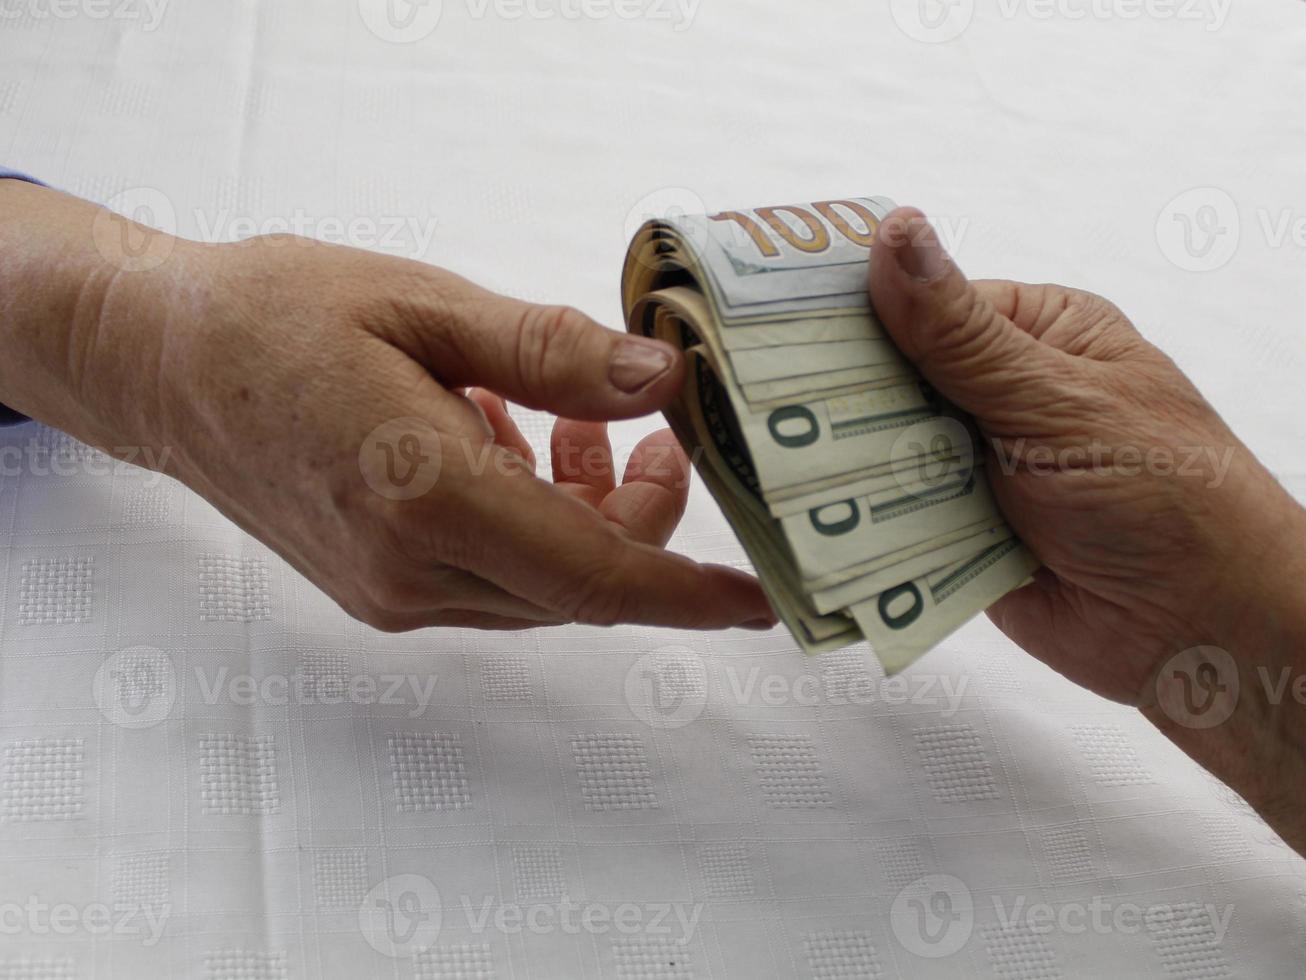 photographie pour des thèmes économiques et financiers avec de l'argent en dollars américains photo